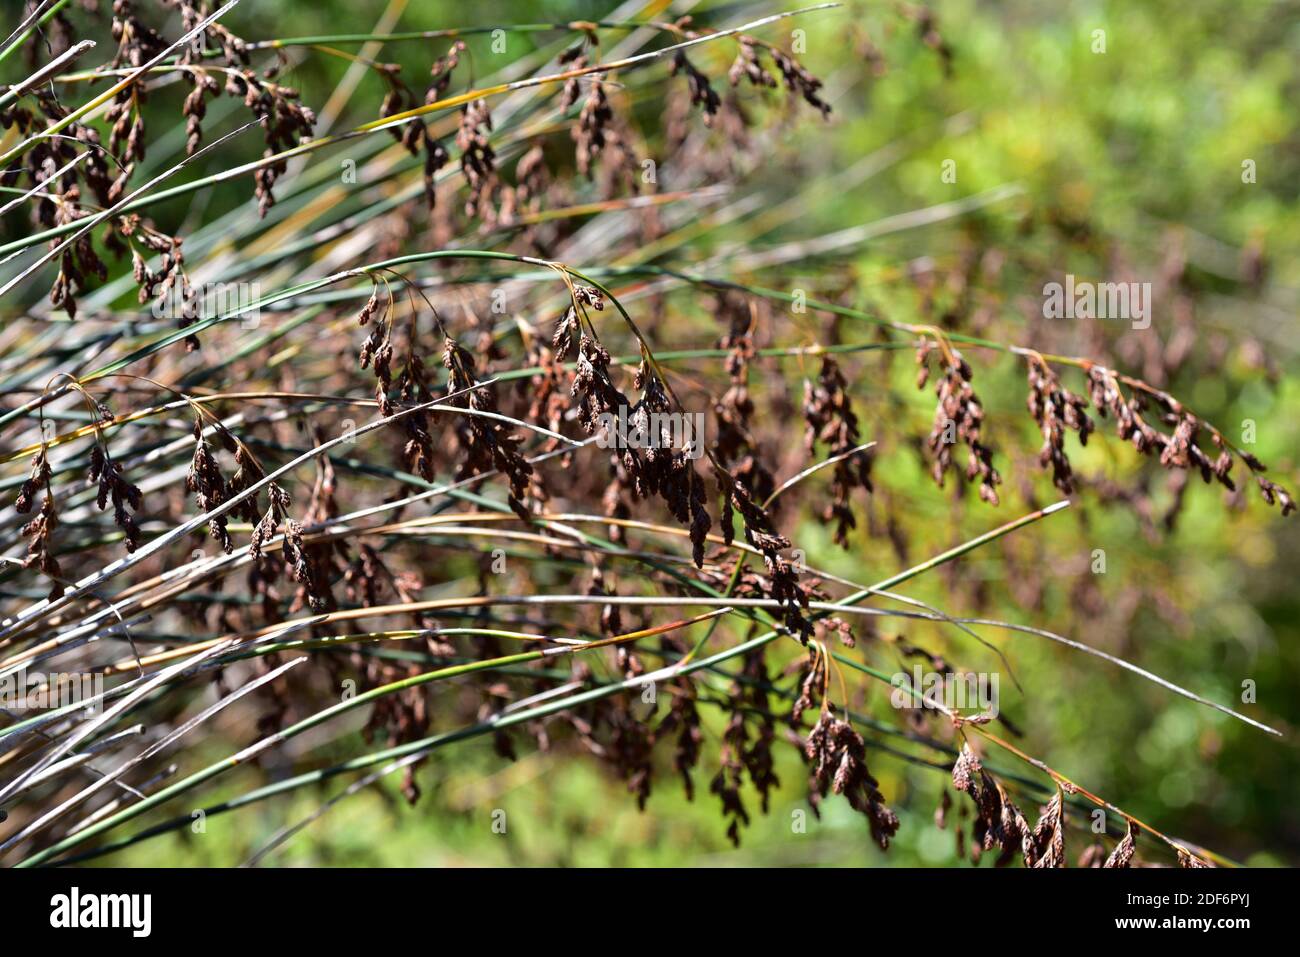 La canna da paglia di Albertinia (Thamnochortus insignis) è una pianta perenne endemica della provincia del Capo, in Sud Africa. Foto Stock